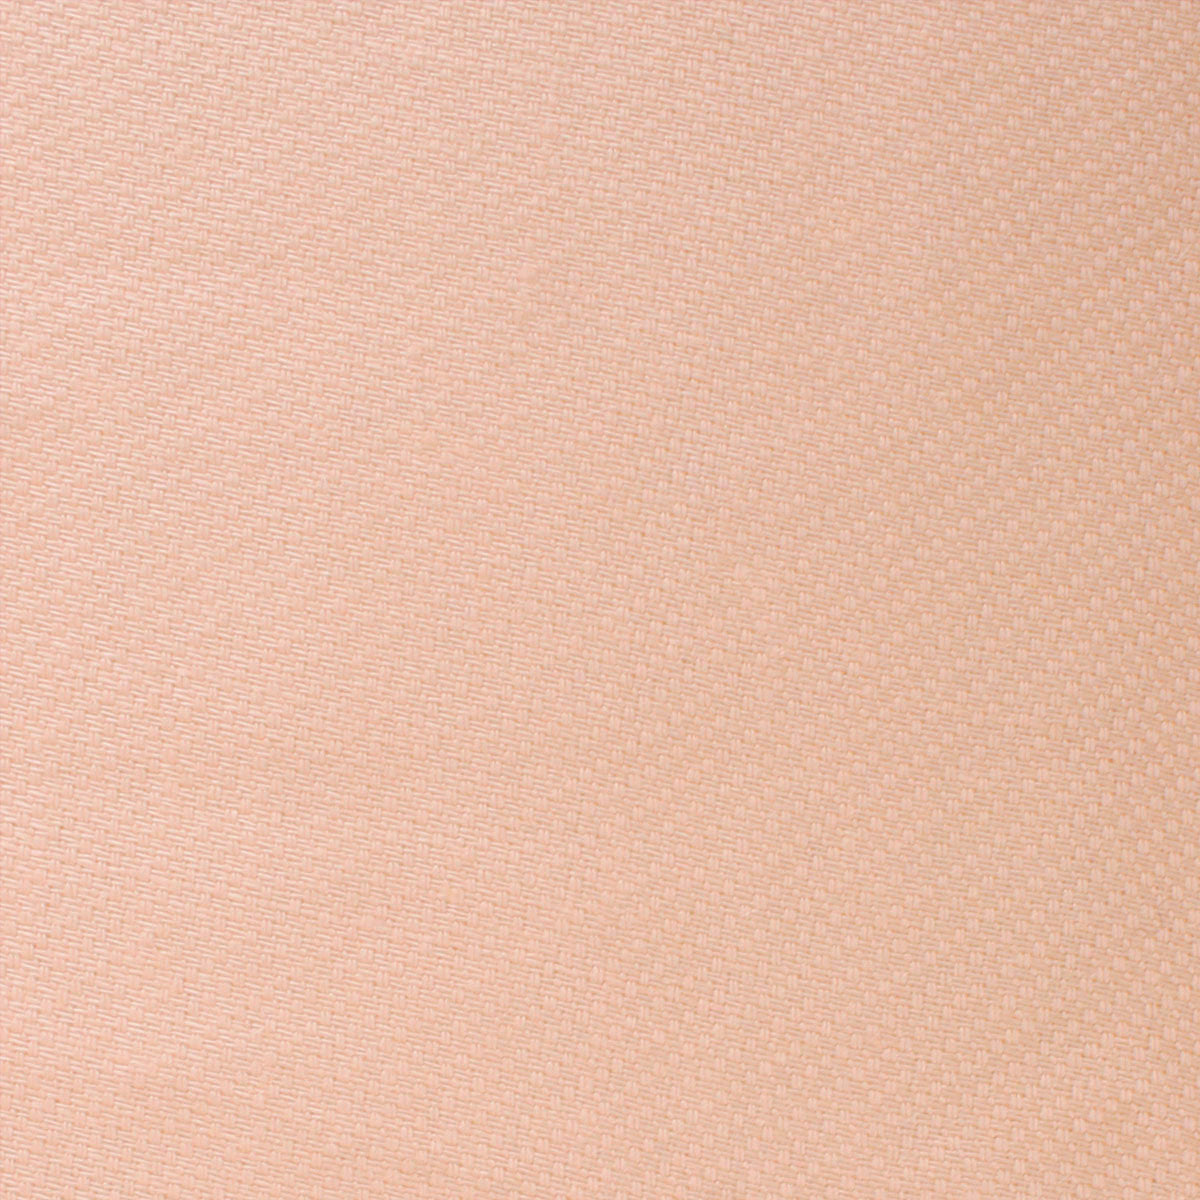 Blush Beige Linen Fabric Swatch